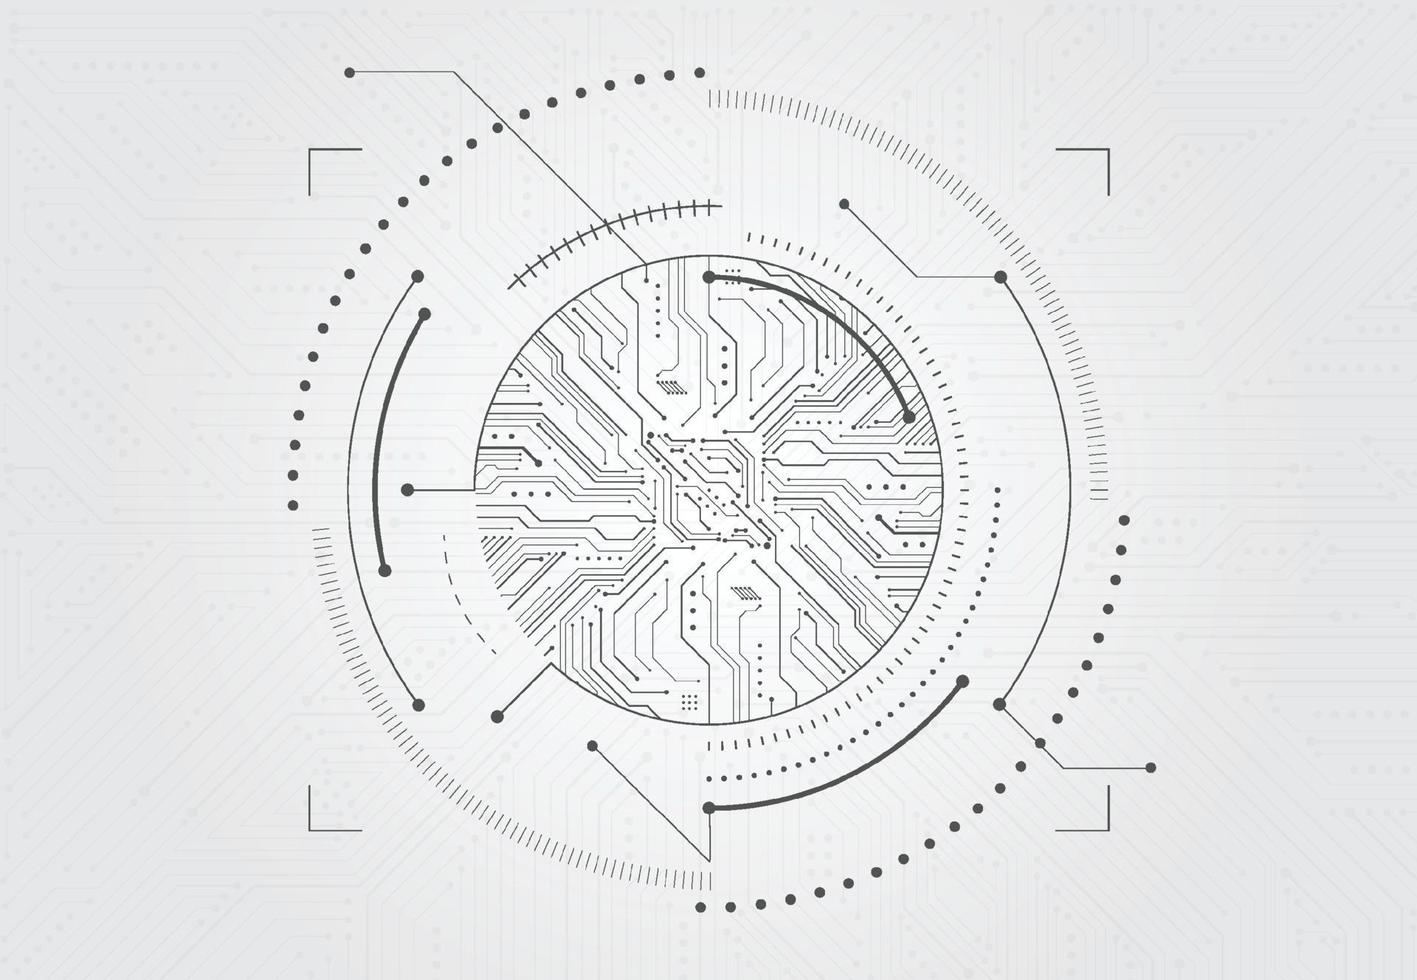 conception d'arrière-plan futuriste de la technologie cybernétique. circuit imprimé numérique abstrait. illustration vectorielle vecteur